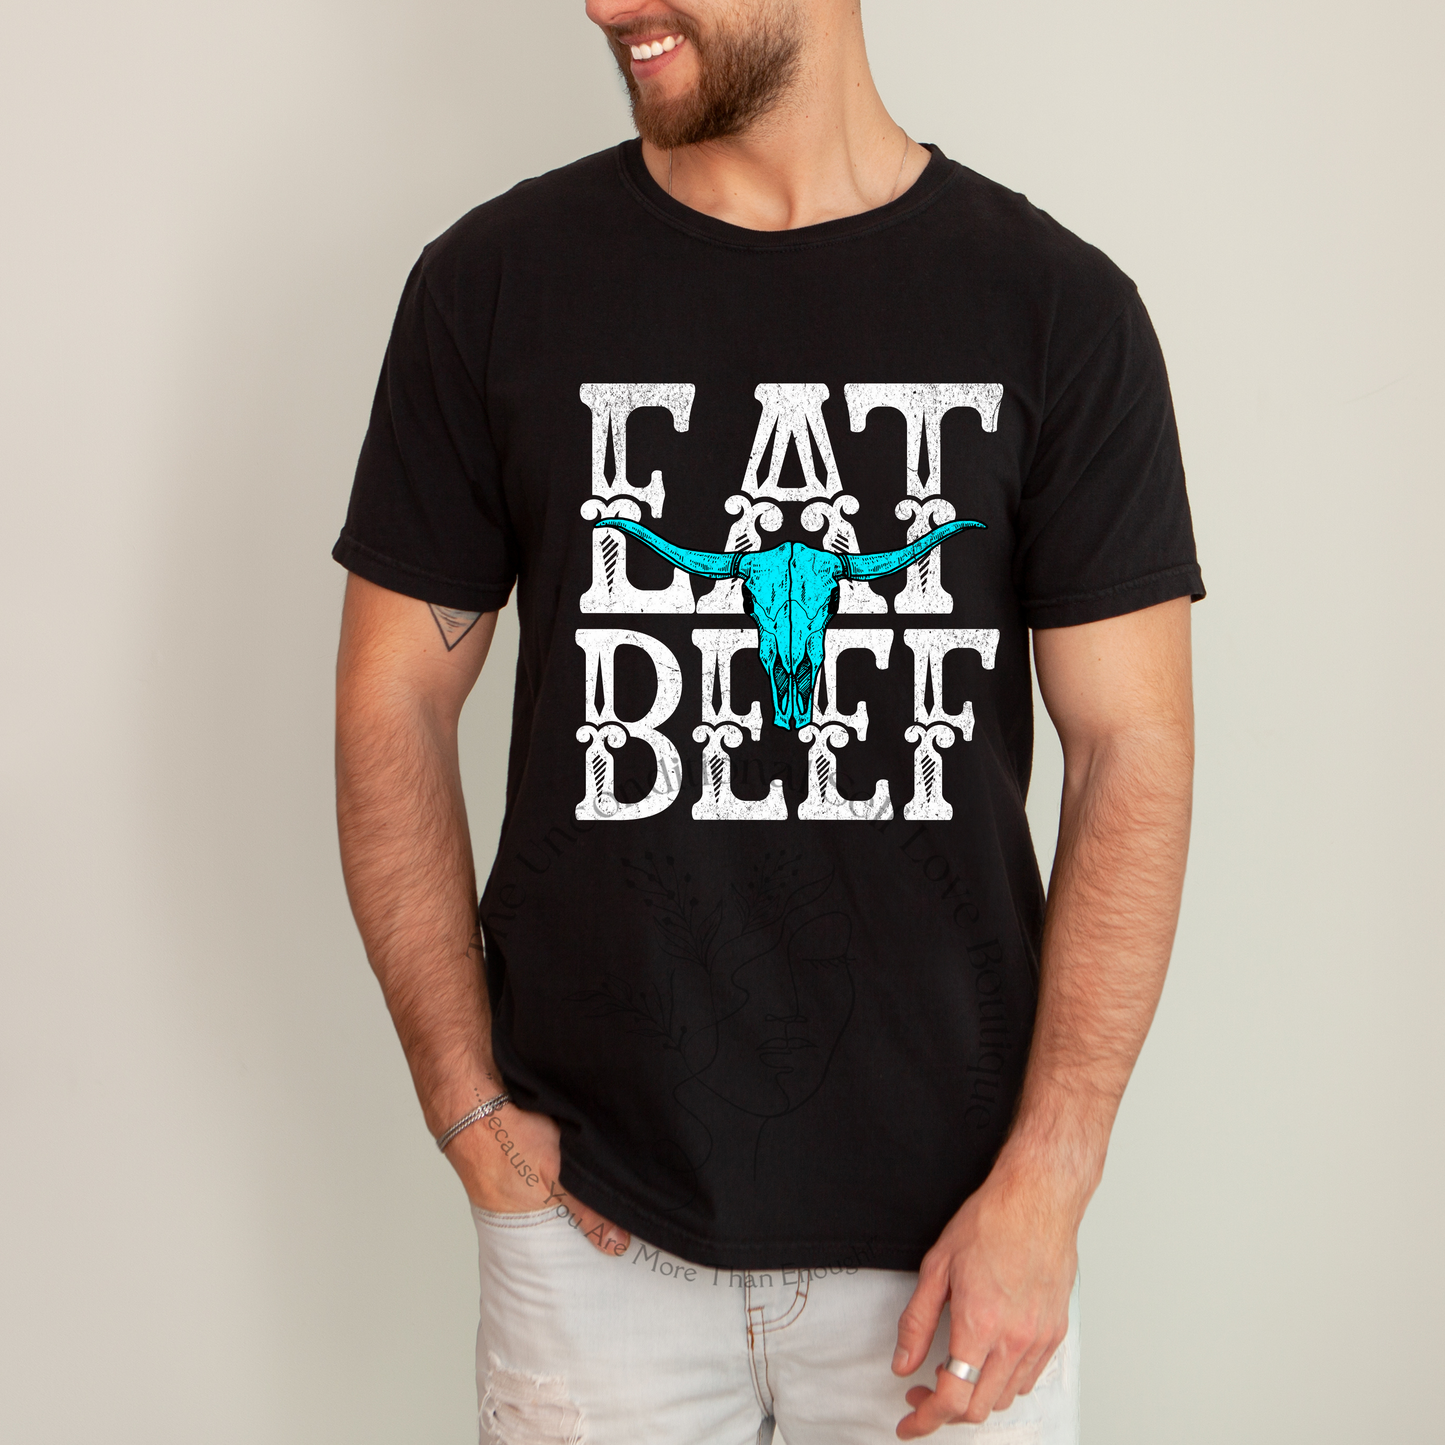 Eat Beef